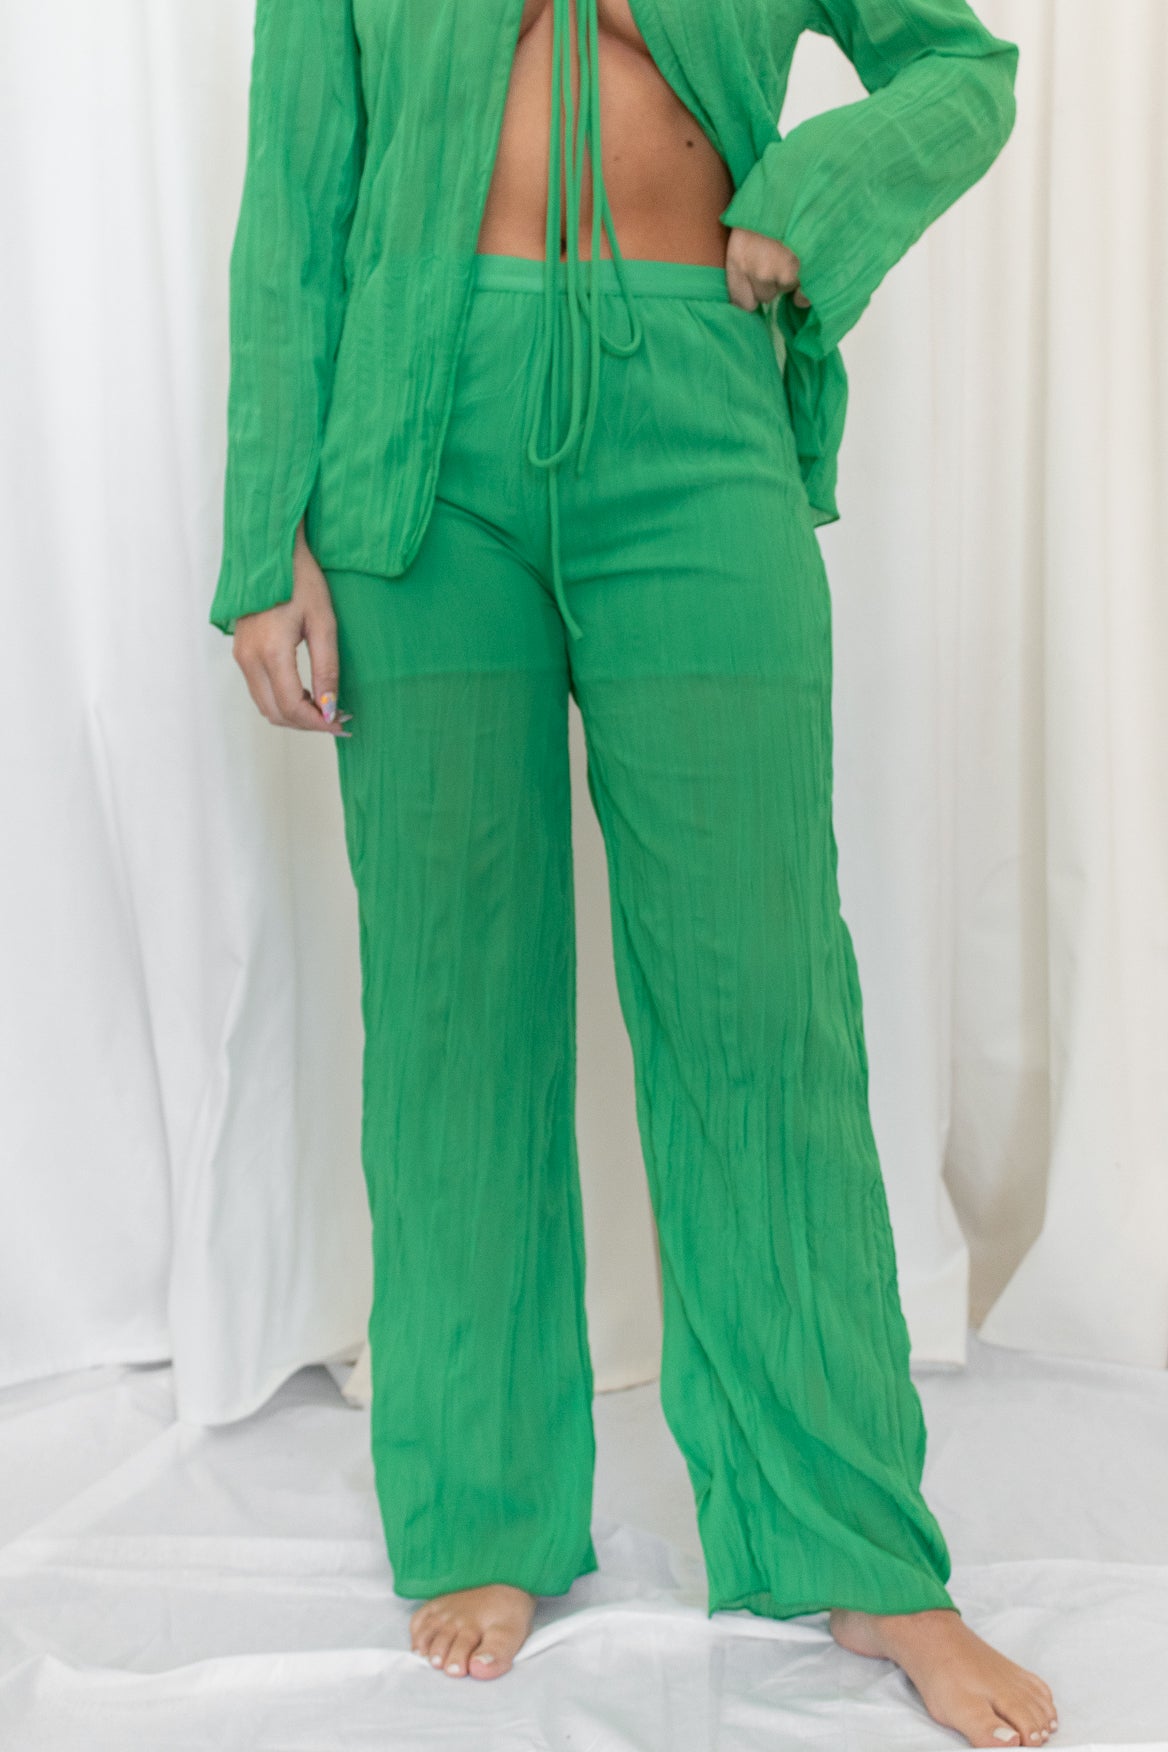 Basil green long sleeved top and pant set.